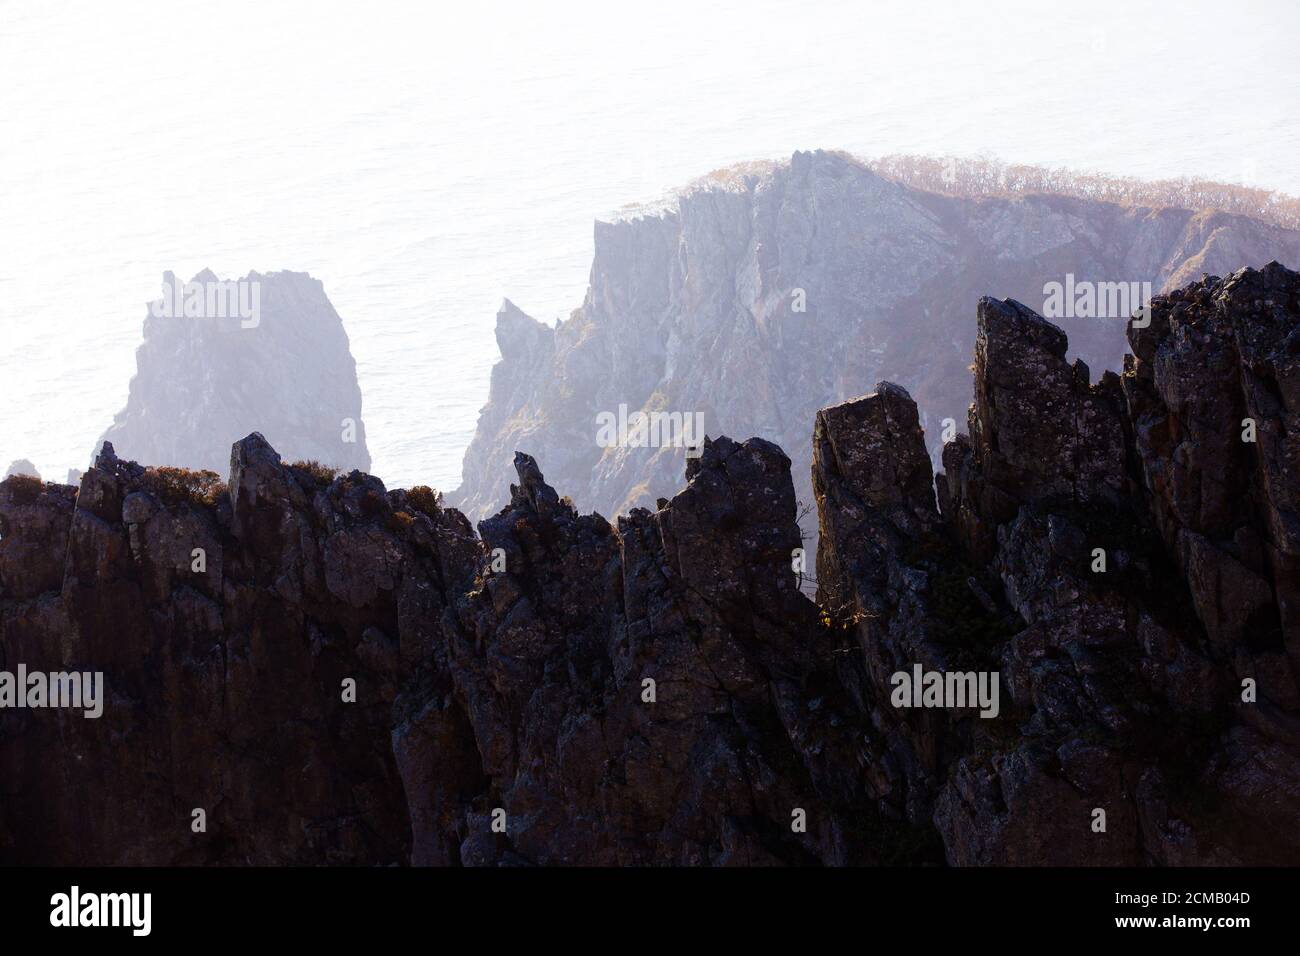 Réserve de biosphère de Sikhote-Alin dans le territoire de Primorsky. Rochers pittoresques contre la mer bleue. Banque D'Images